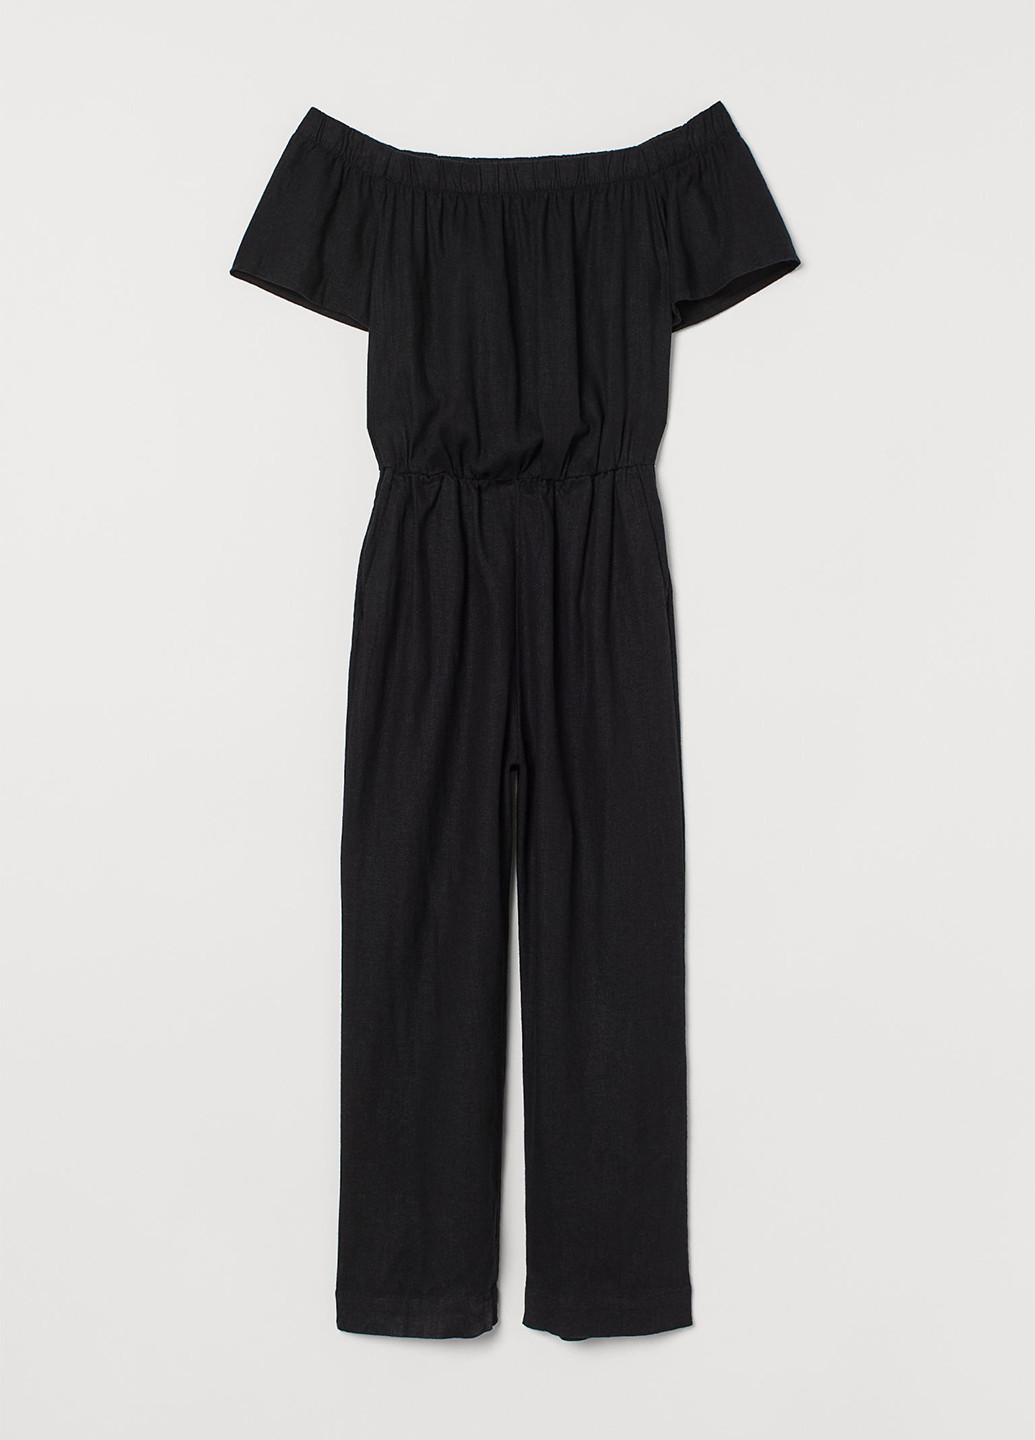 Комбинезон H&M комбинезон-брюки чёрный кэжуал лен